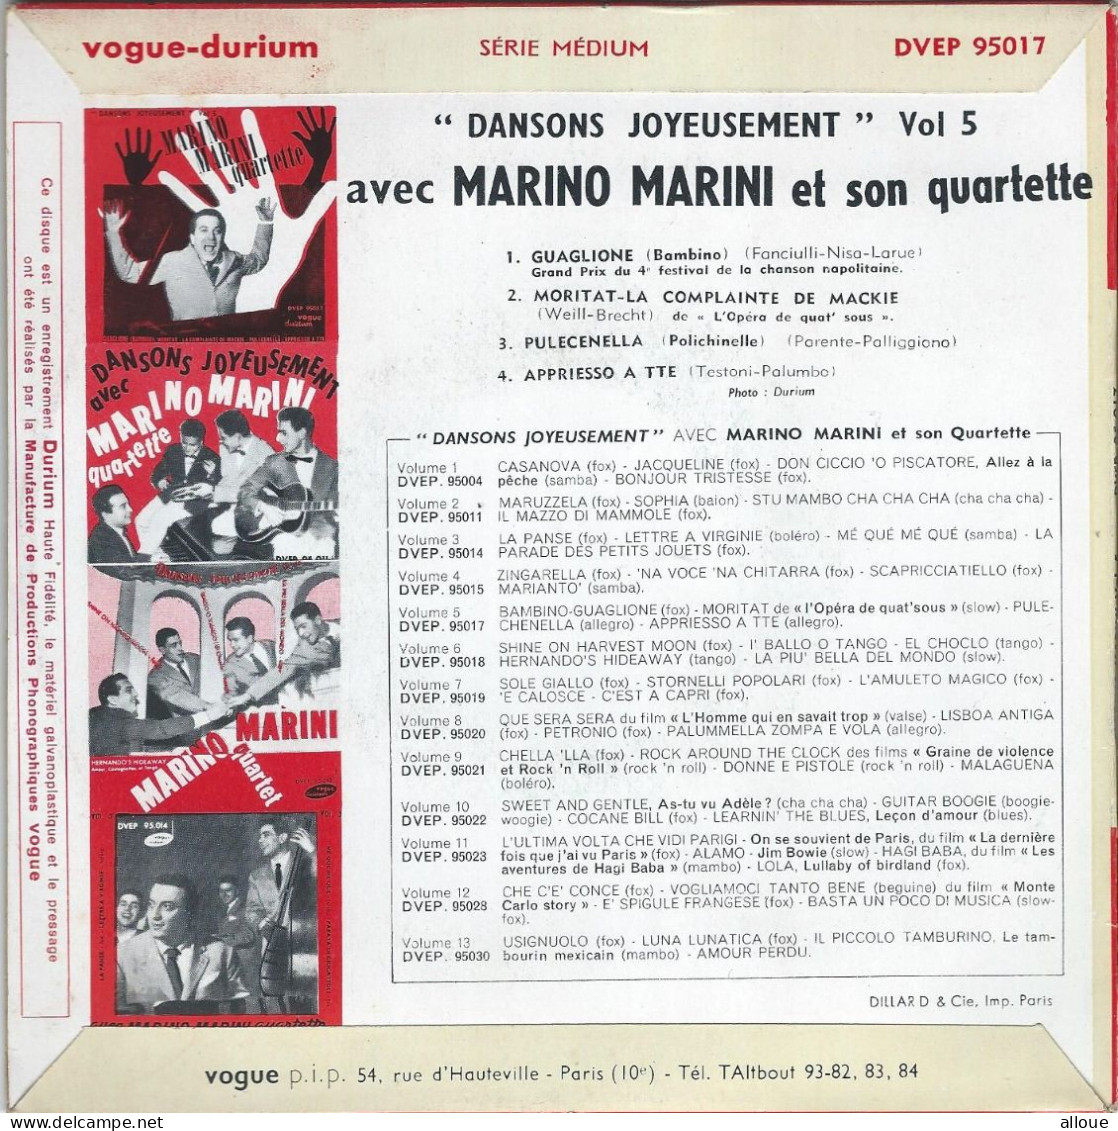 MARINO MARINI QUARTETTE - FR EP - GUAGLIONE (BAMBINO) + 3 - Otros - Canción Italiana